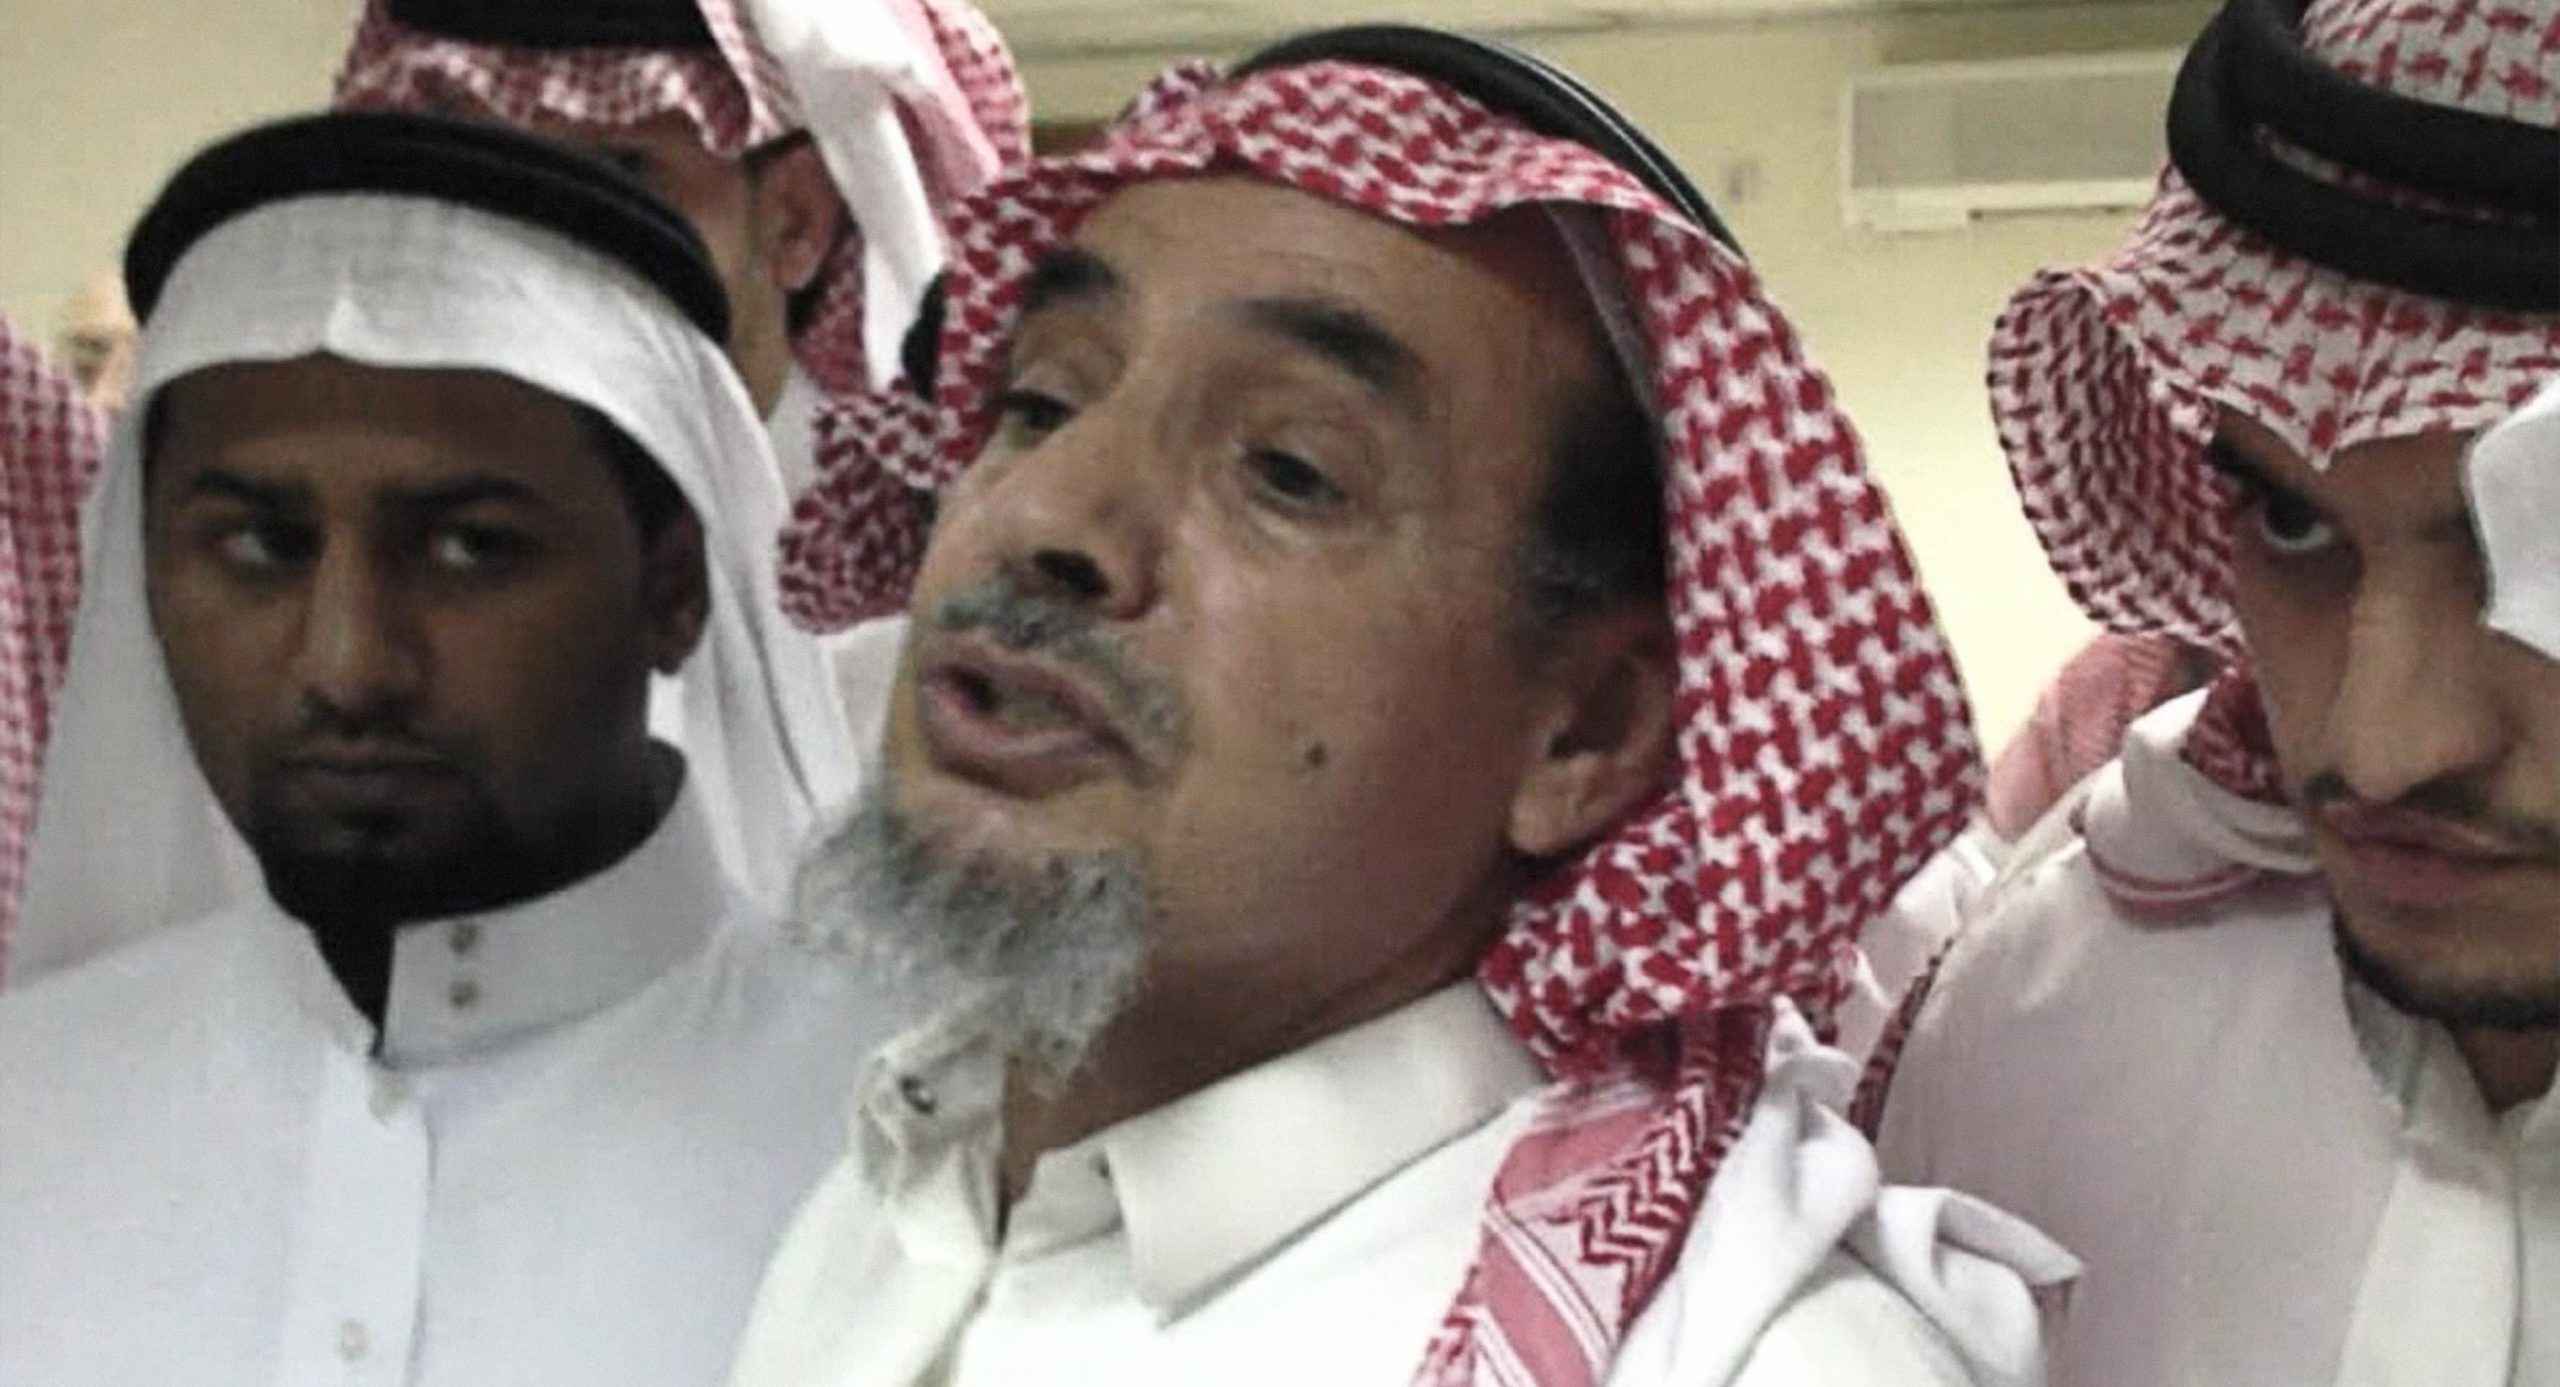 صورة السعودية تترك ناشطاً يموت في السجن دون رعاية طبية كي تخفِّف من عدد الإعدامات